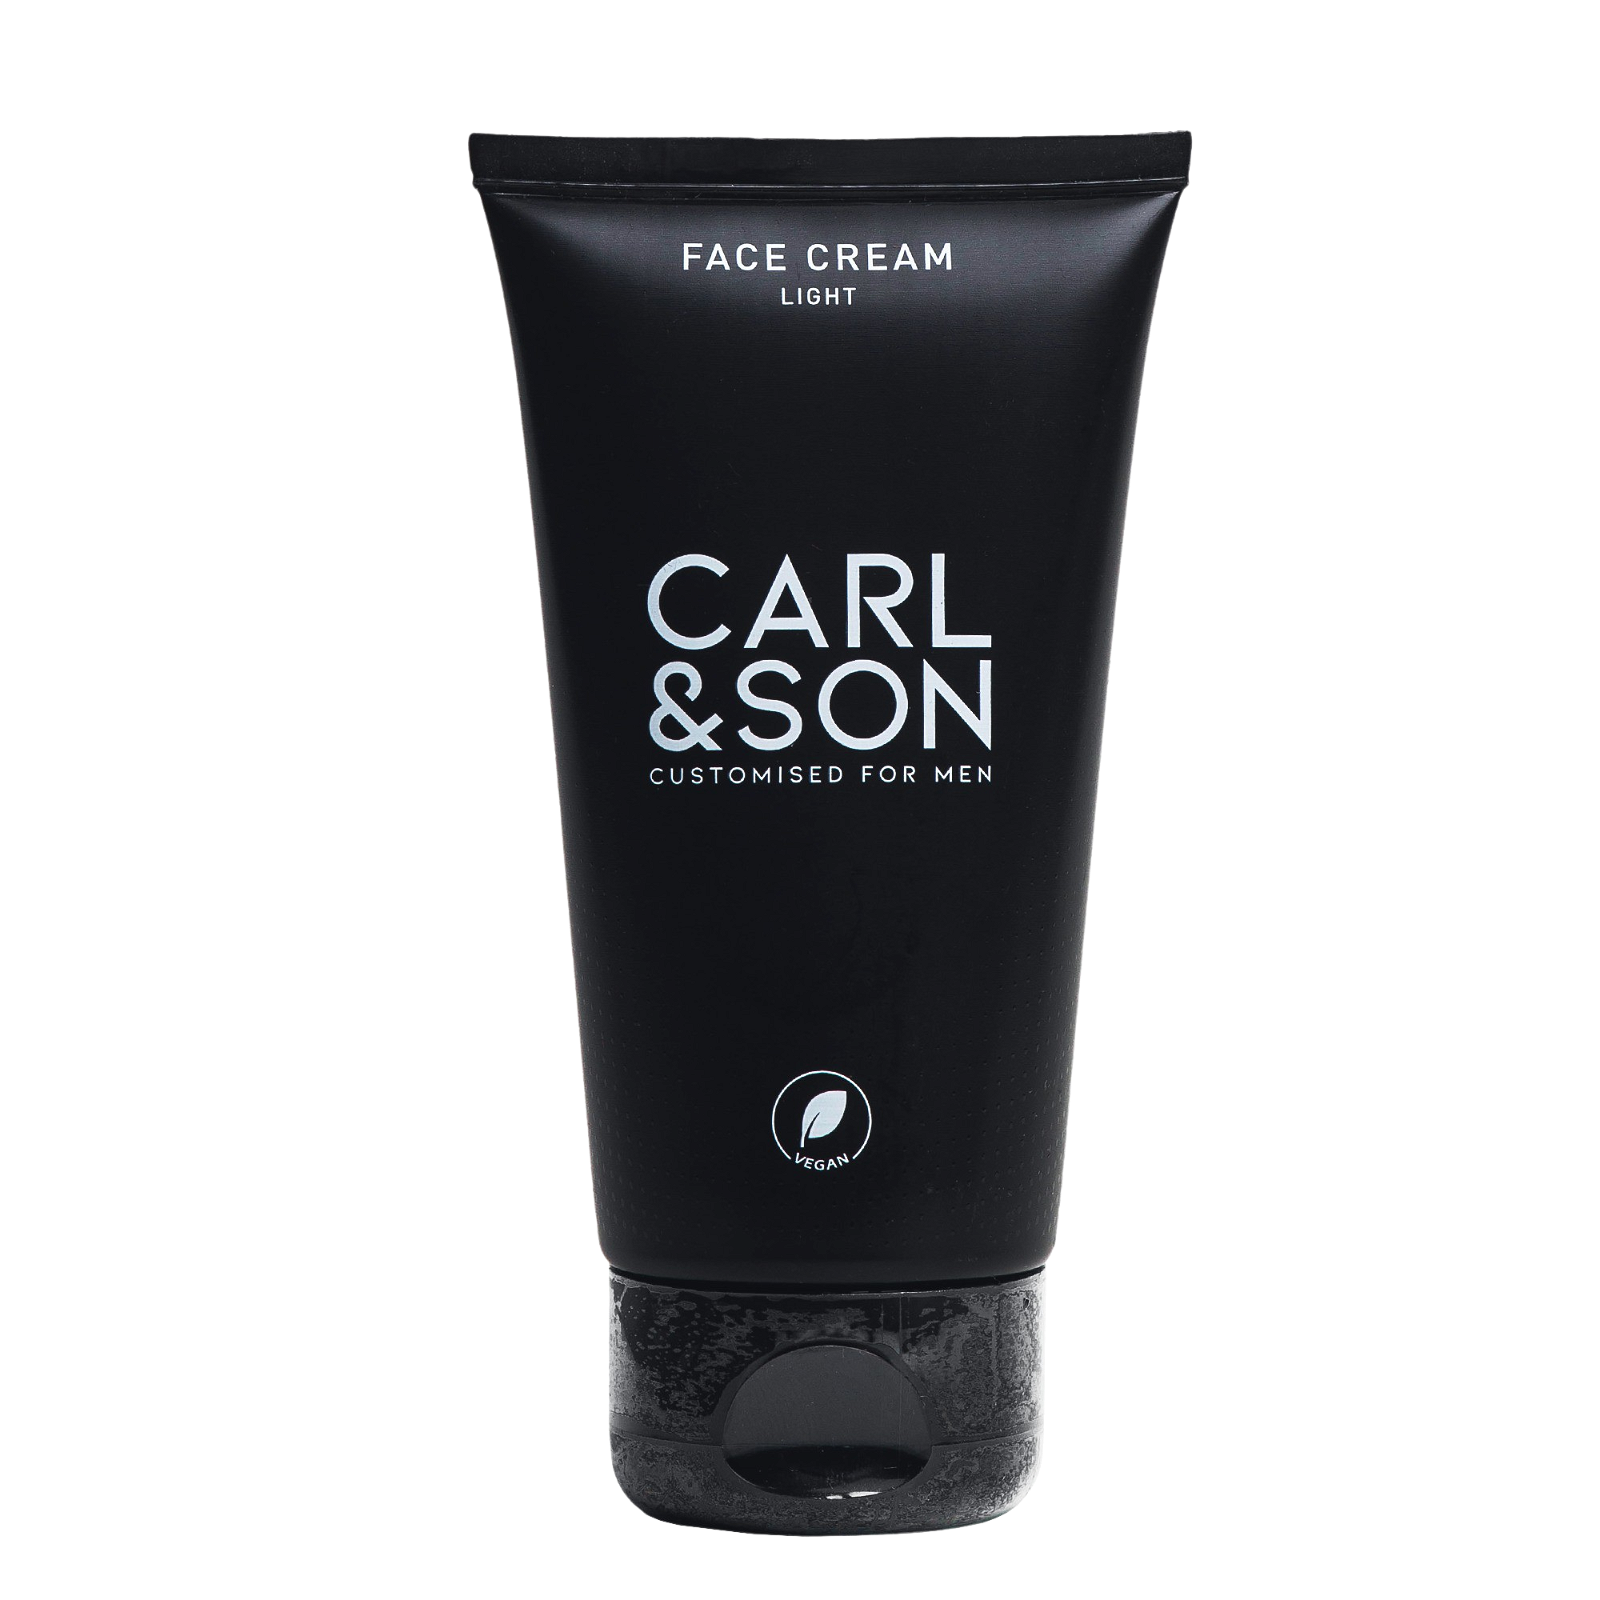 Carl & Son Face Cream Light